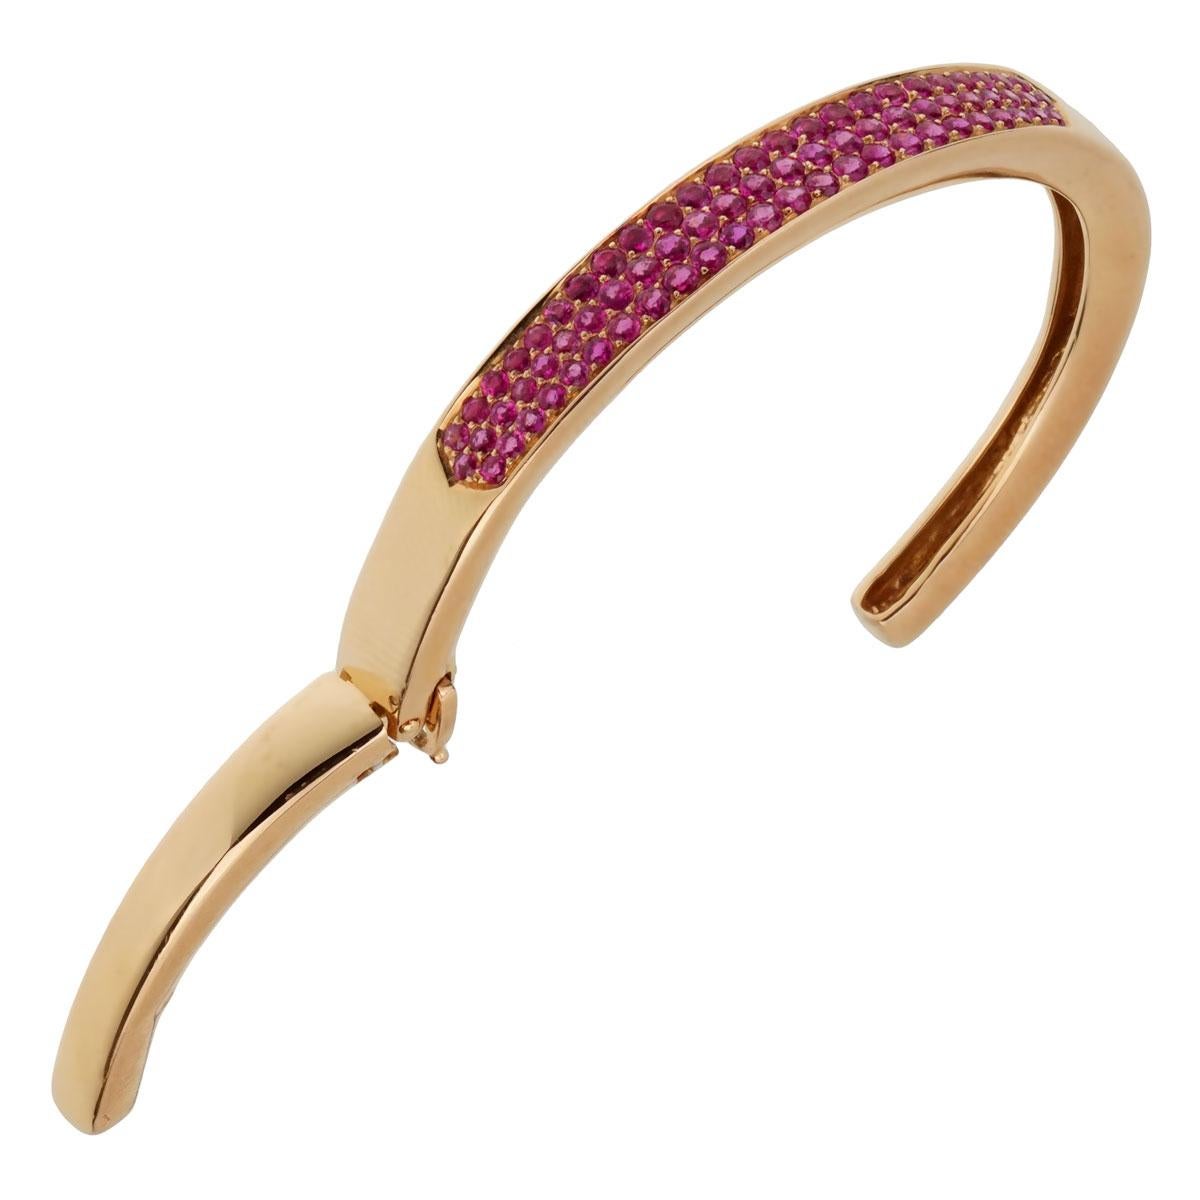 Fabuleux bracelet Van Cleef & Arpels datant de 1980, ce luxueux bracelet présente 3 rangées de saphirs roses vifs sertis dans un or rose 18k étincelant.